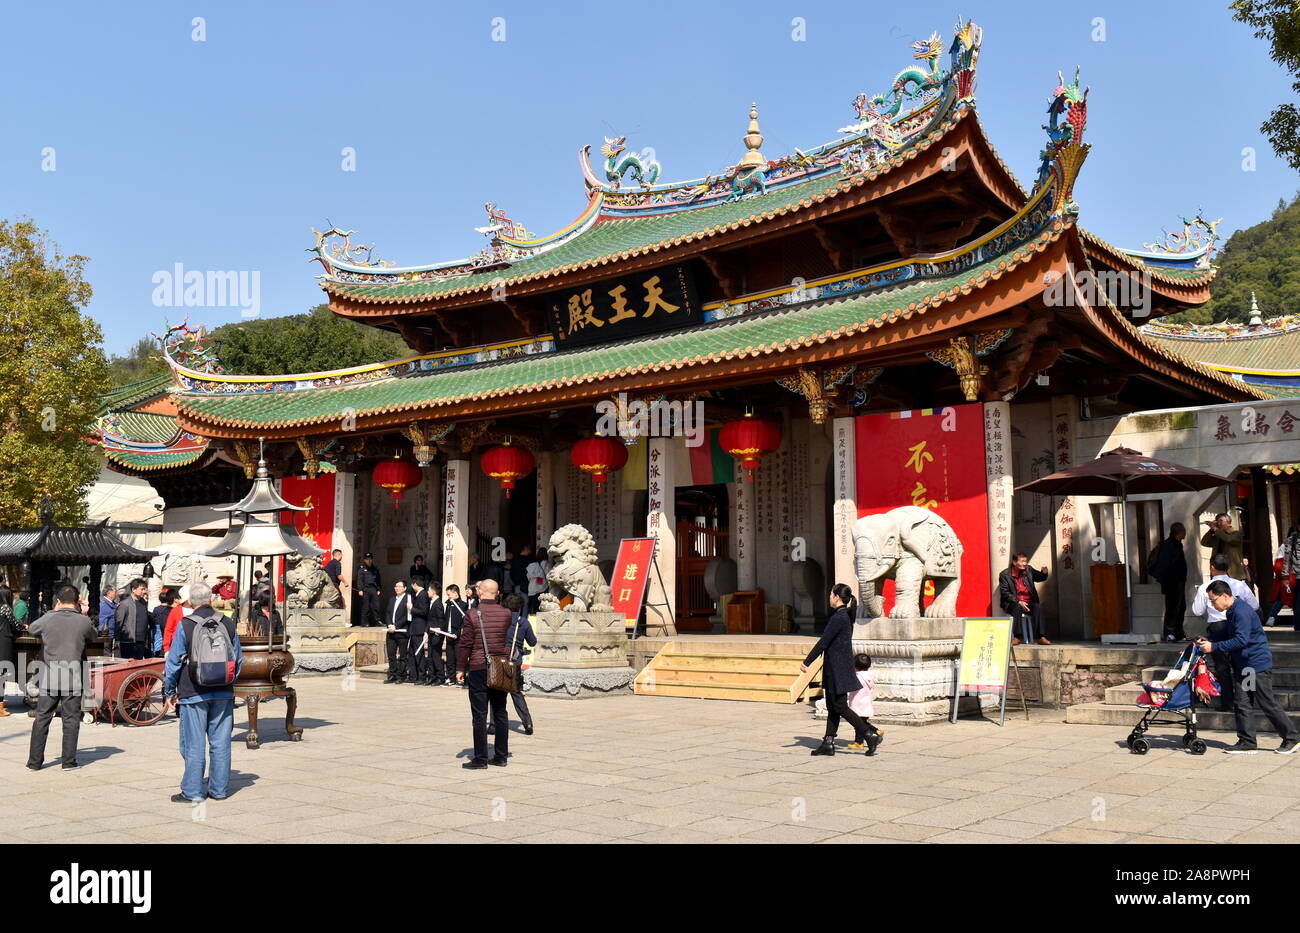 Main gate of ancient Nanputuo Buddhist temple, Xiamen, China Stock Photo